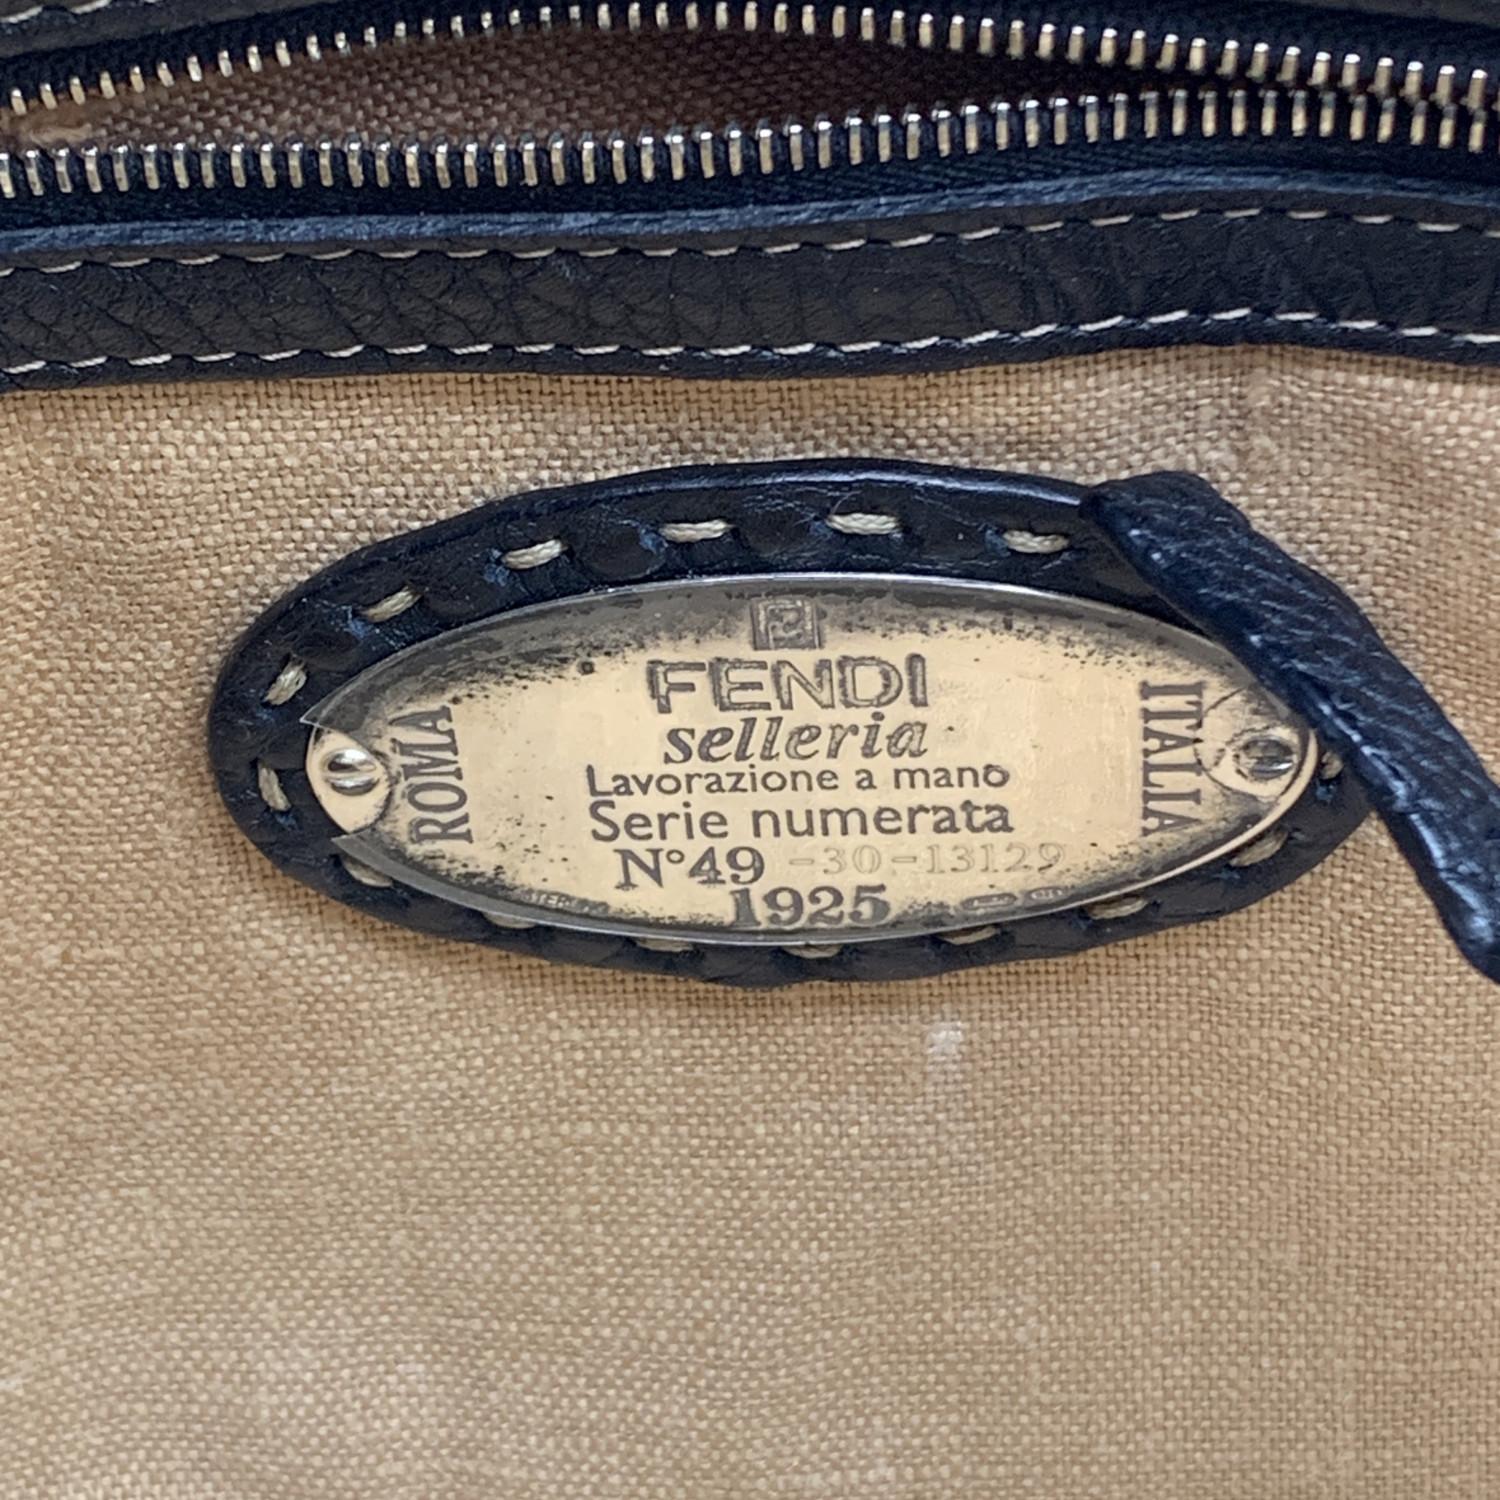 Fendi Selleria Black Leather Linda Satchel Handbag 4